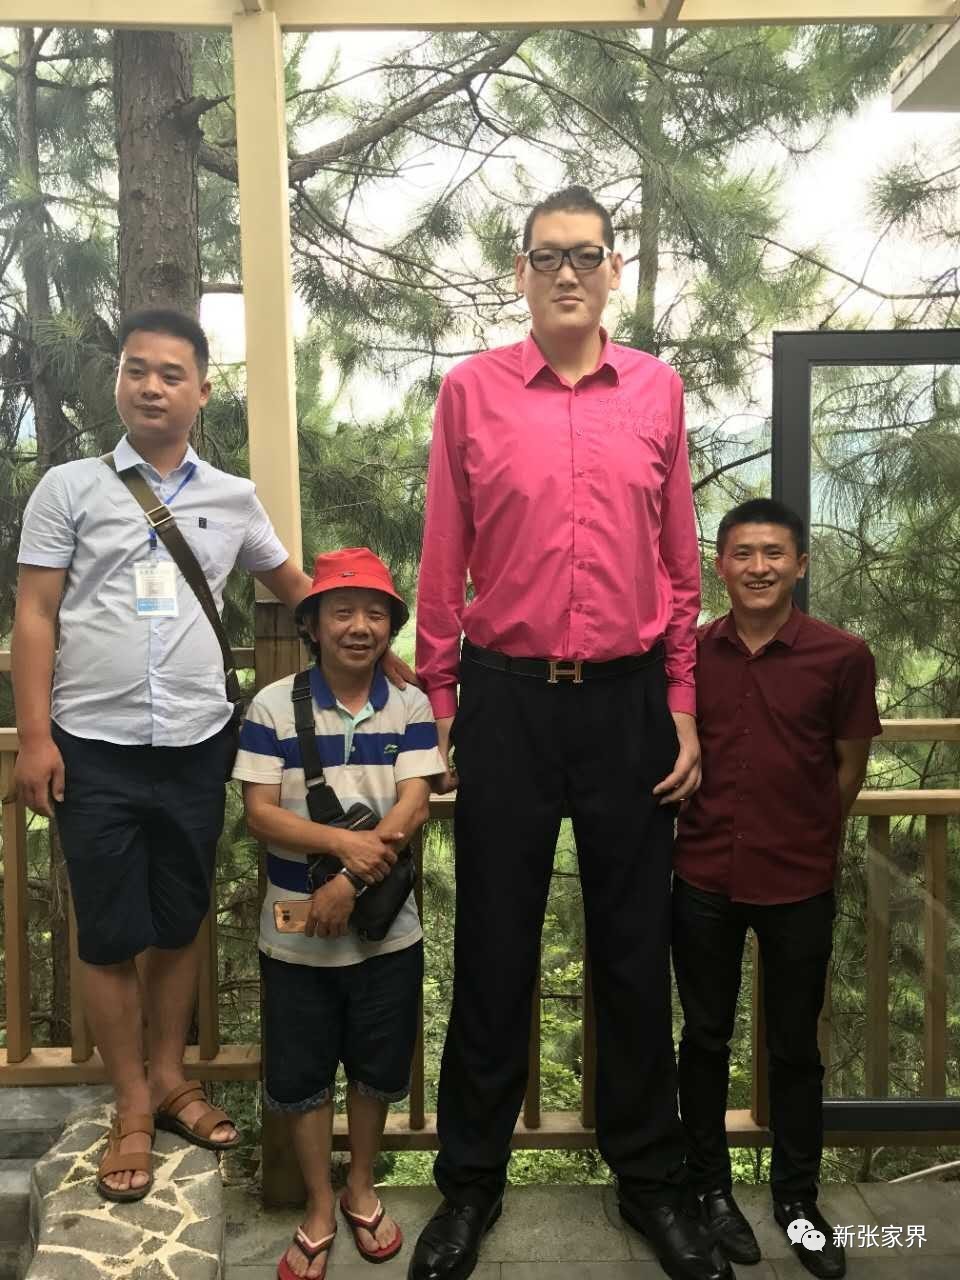 张欢,31岁,山东省枣庄市薛城区人,身高2.38米,体重163公斤,脚长